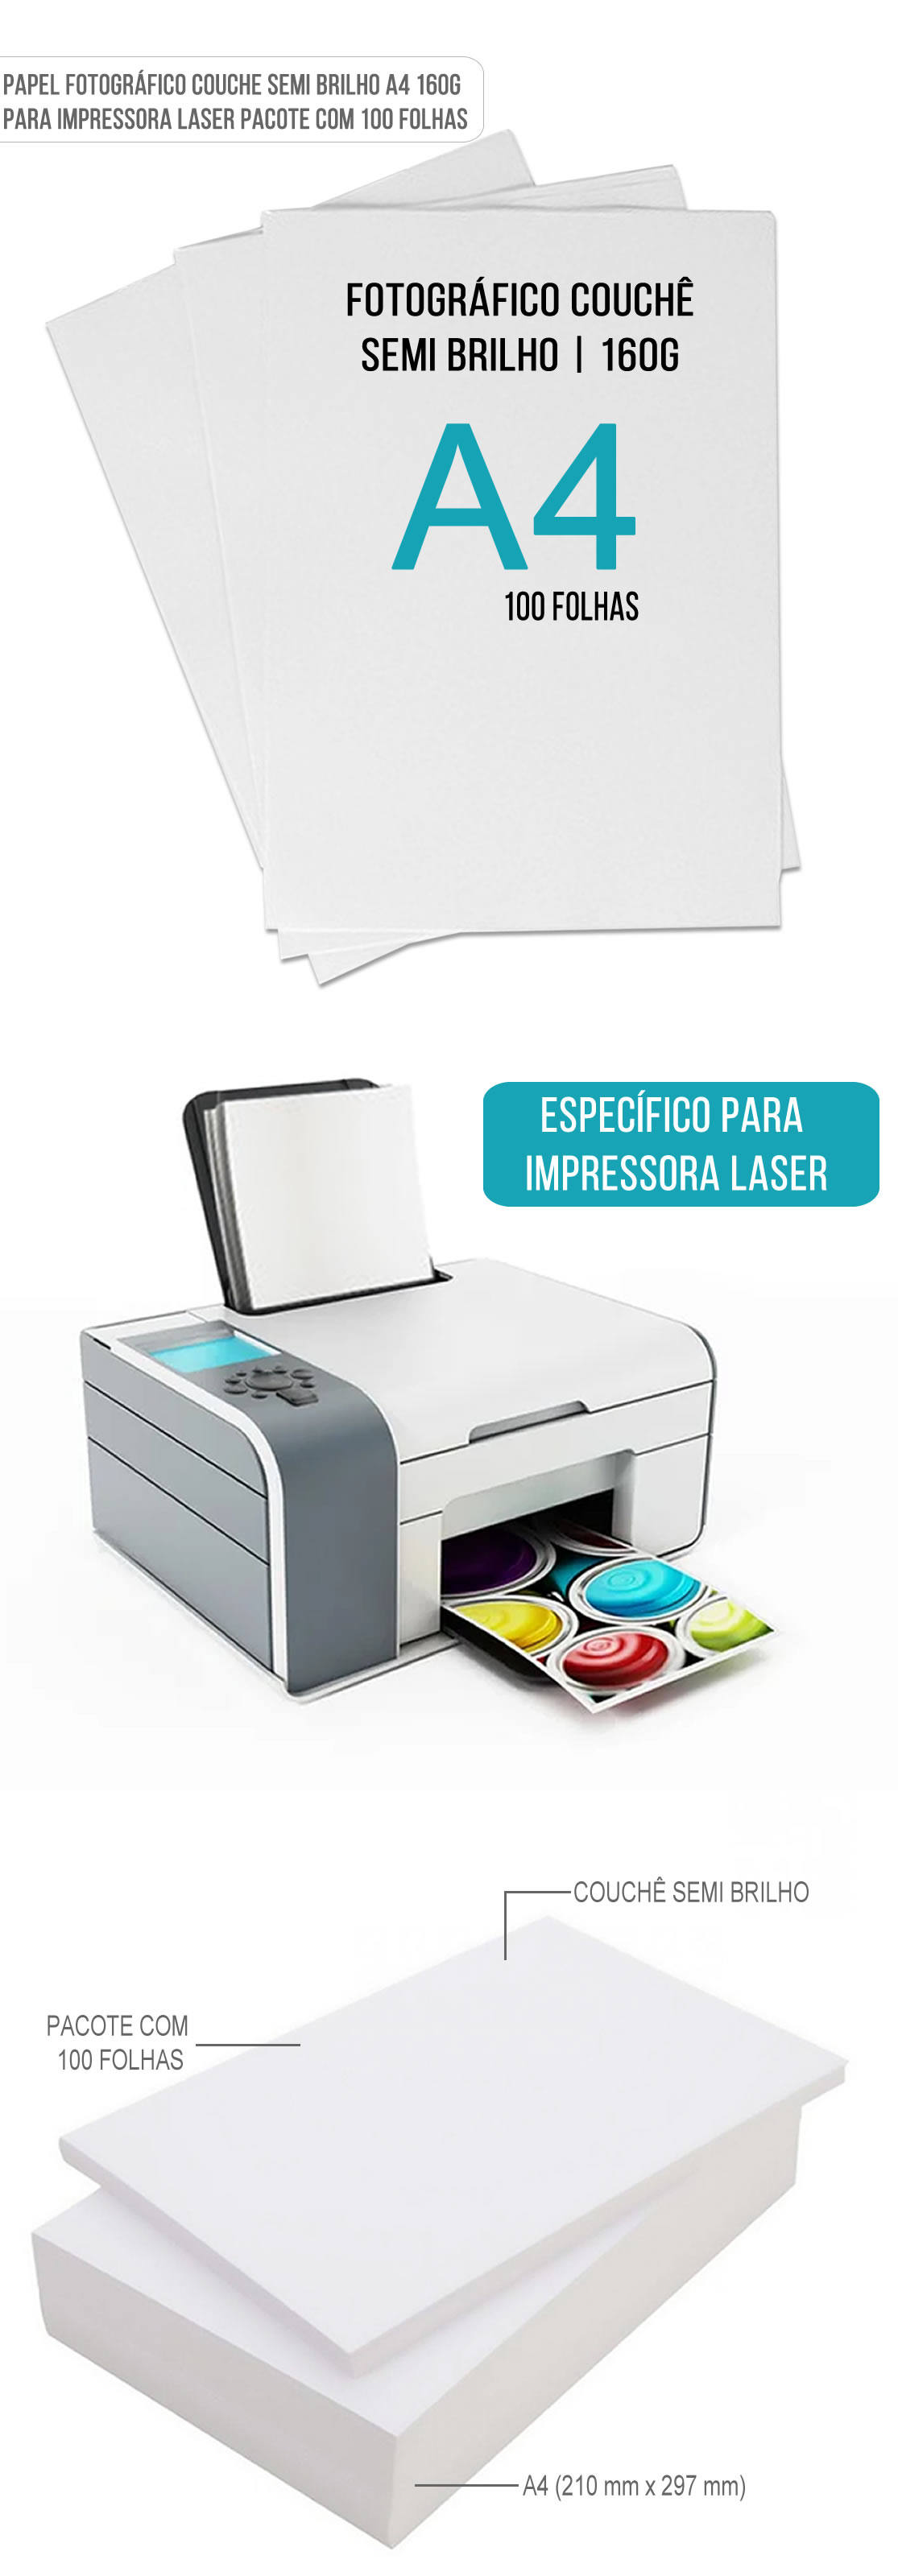 Papel Fotogrfico Couche Semi Brilho A4 160g Especfico para Impressora Laser com 100 Folhas